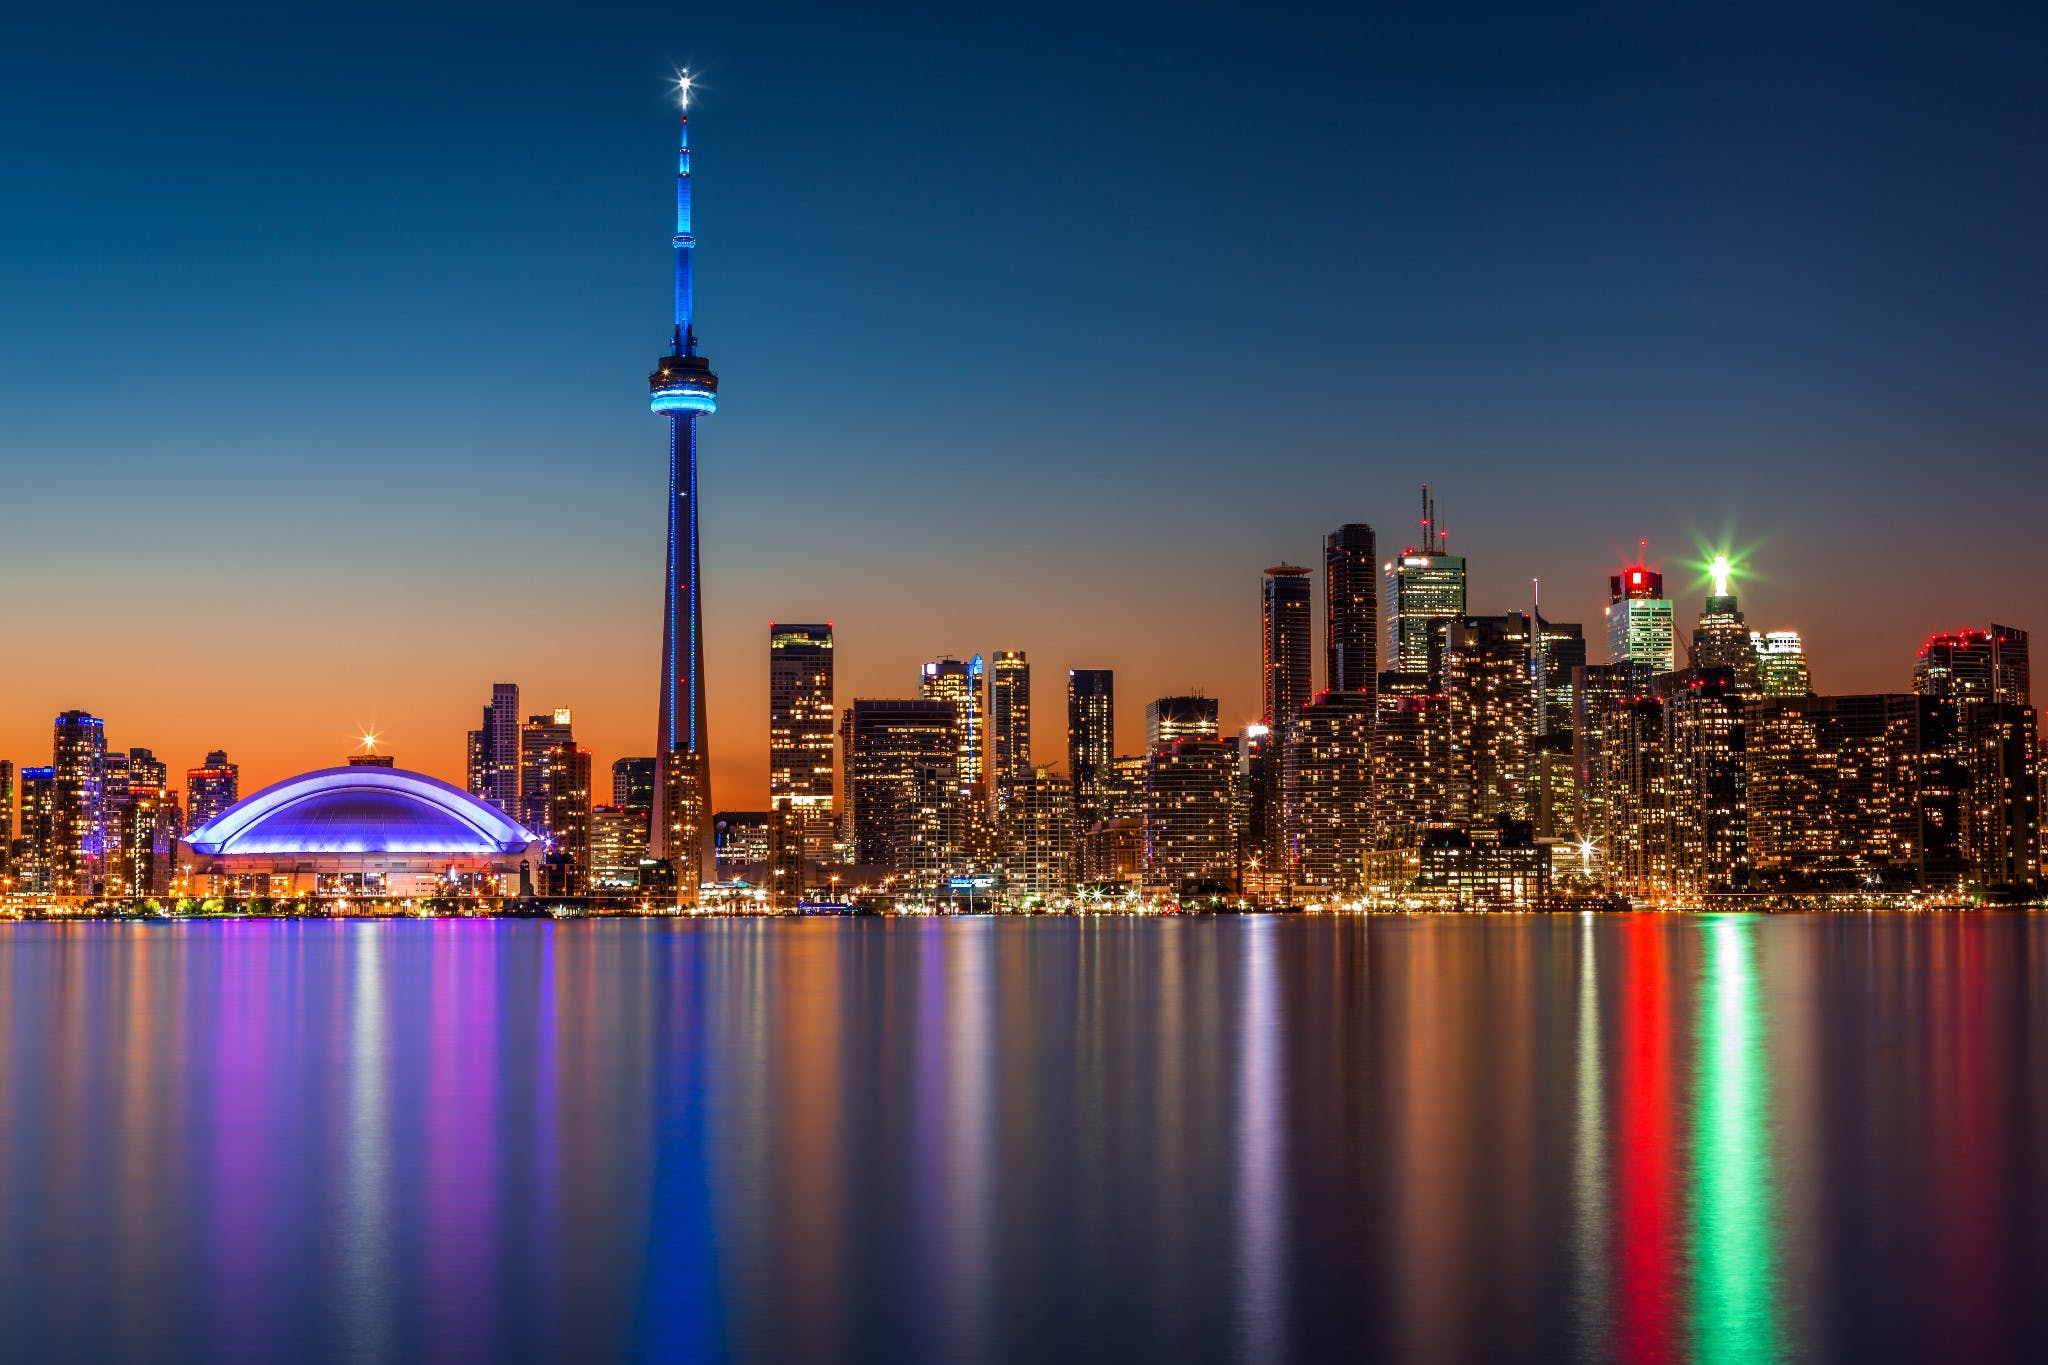 Toronto landscape by night